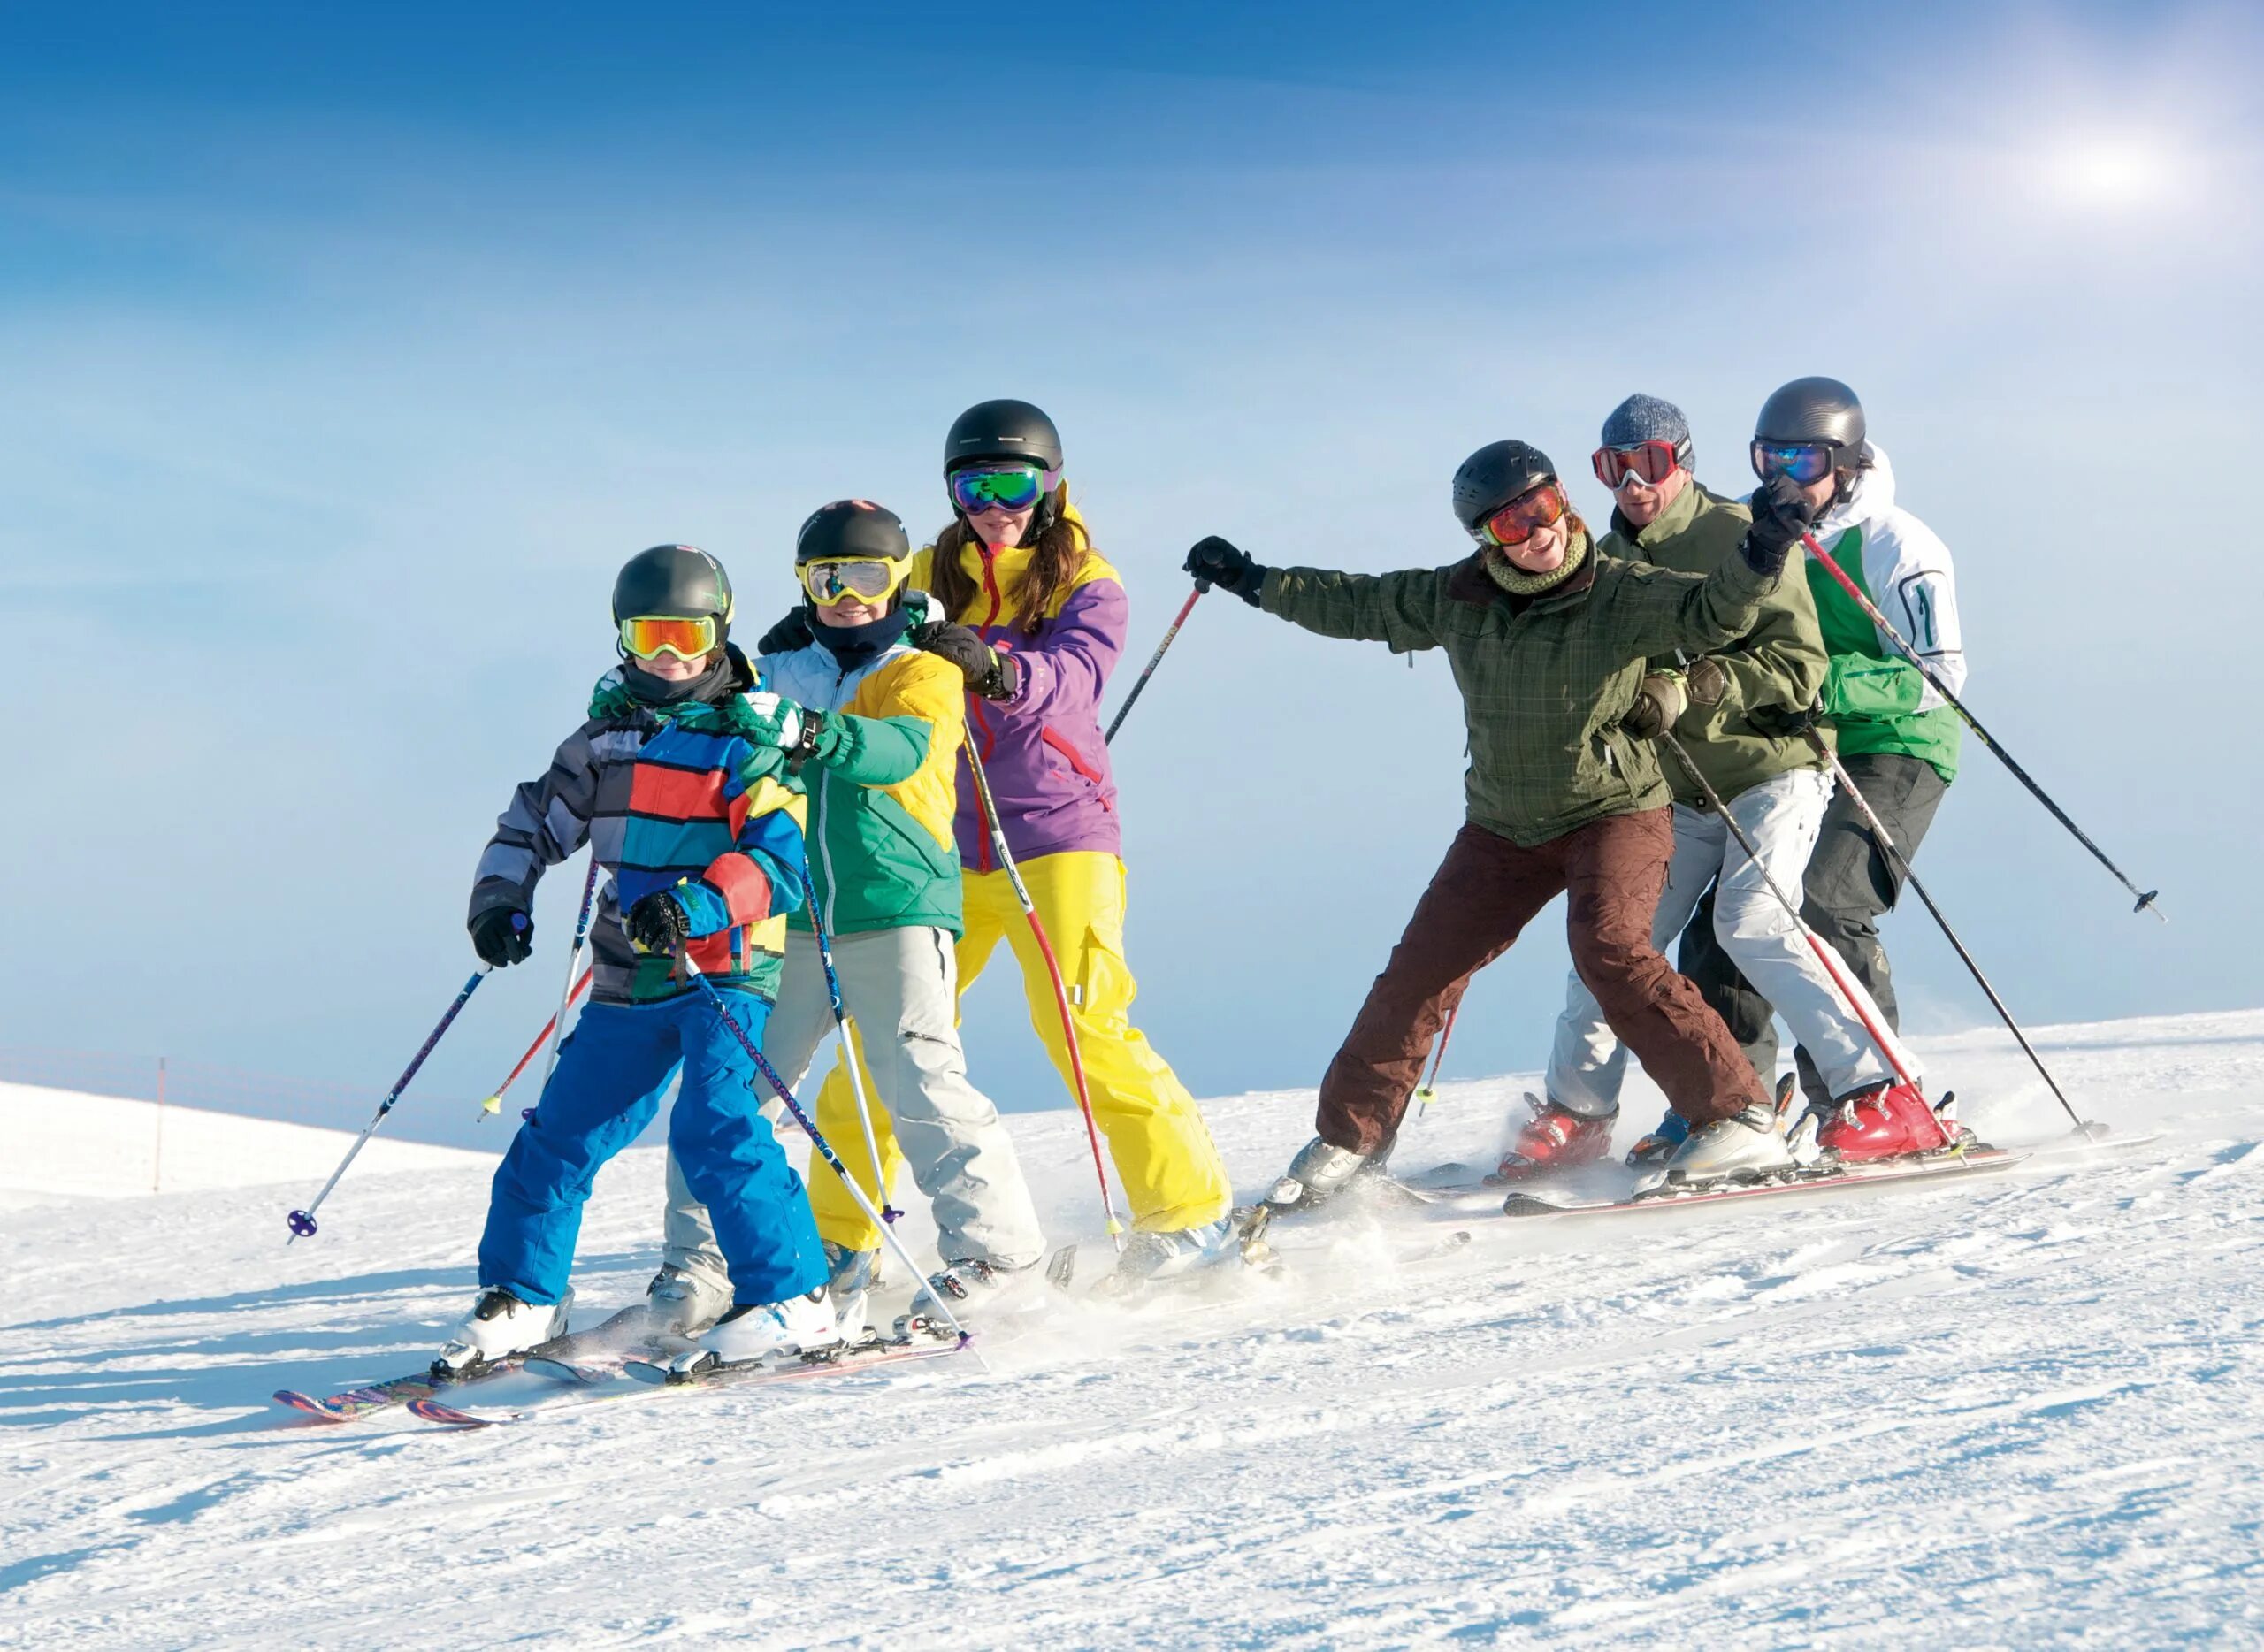 Катание на лыжах. Семья катается на лыжах. Друзья на лыжах. Горные лыжи. В чем ходят на горнолыжных курортах